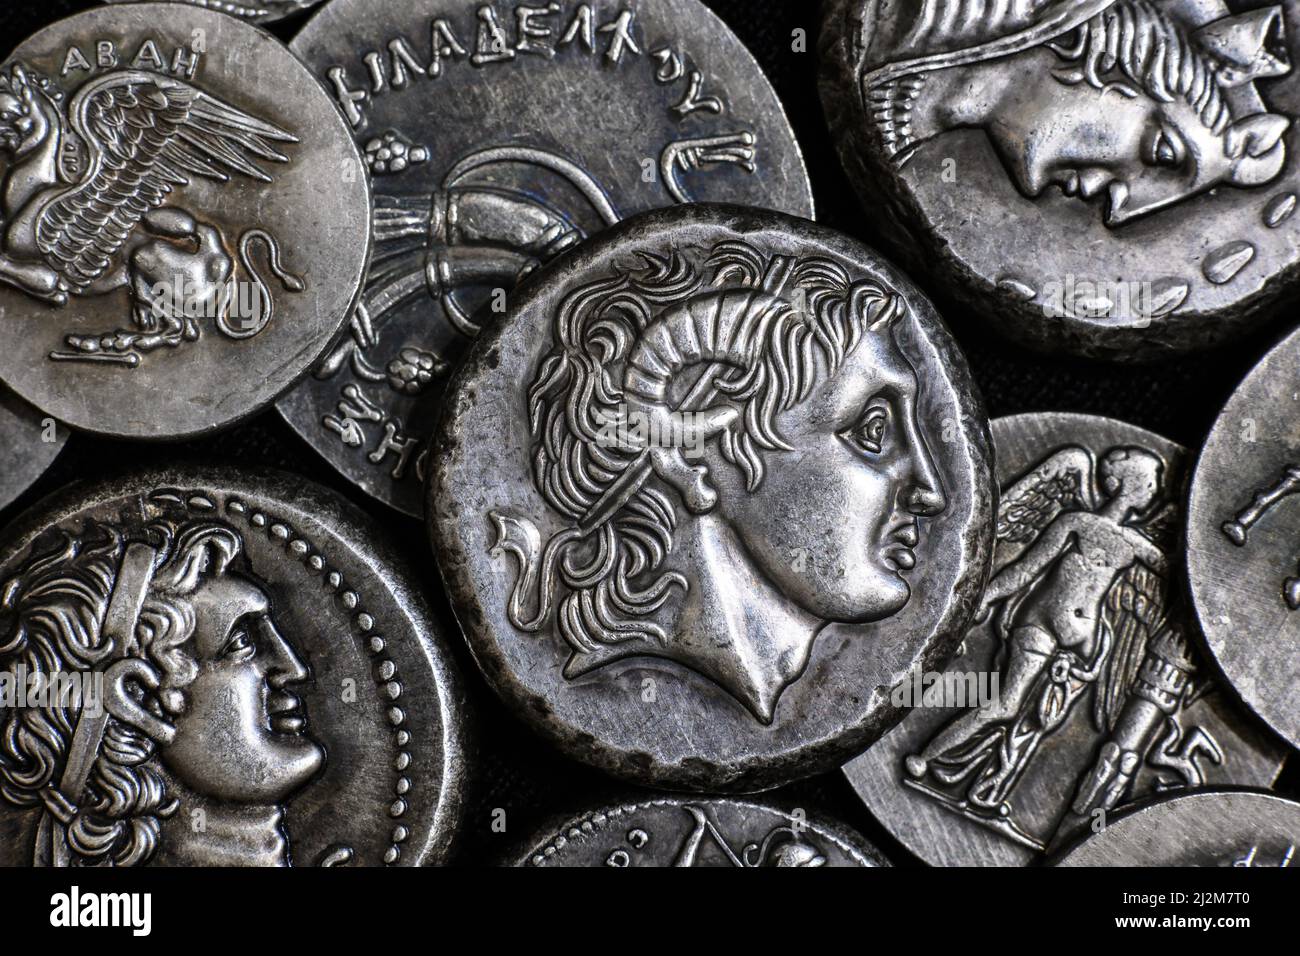 Antike griechische Münze mit Alexander dem Großen Porträt, Stapel silberner Tetradrachmenmünzen. Blick von oben auf altes, seltenes Geld. Konzept von Griechenland, wertvolle Münzen Stockfoto